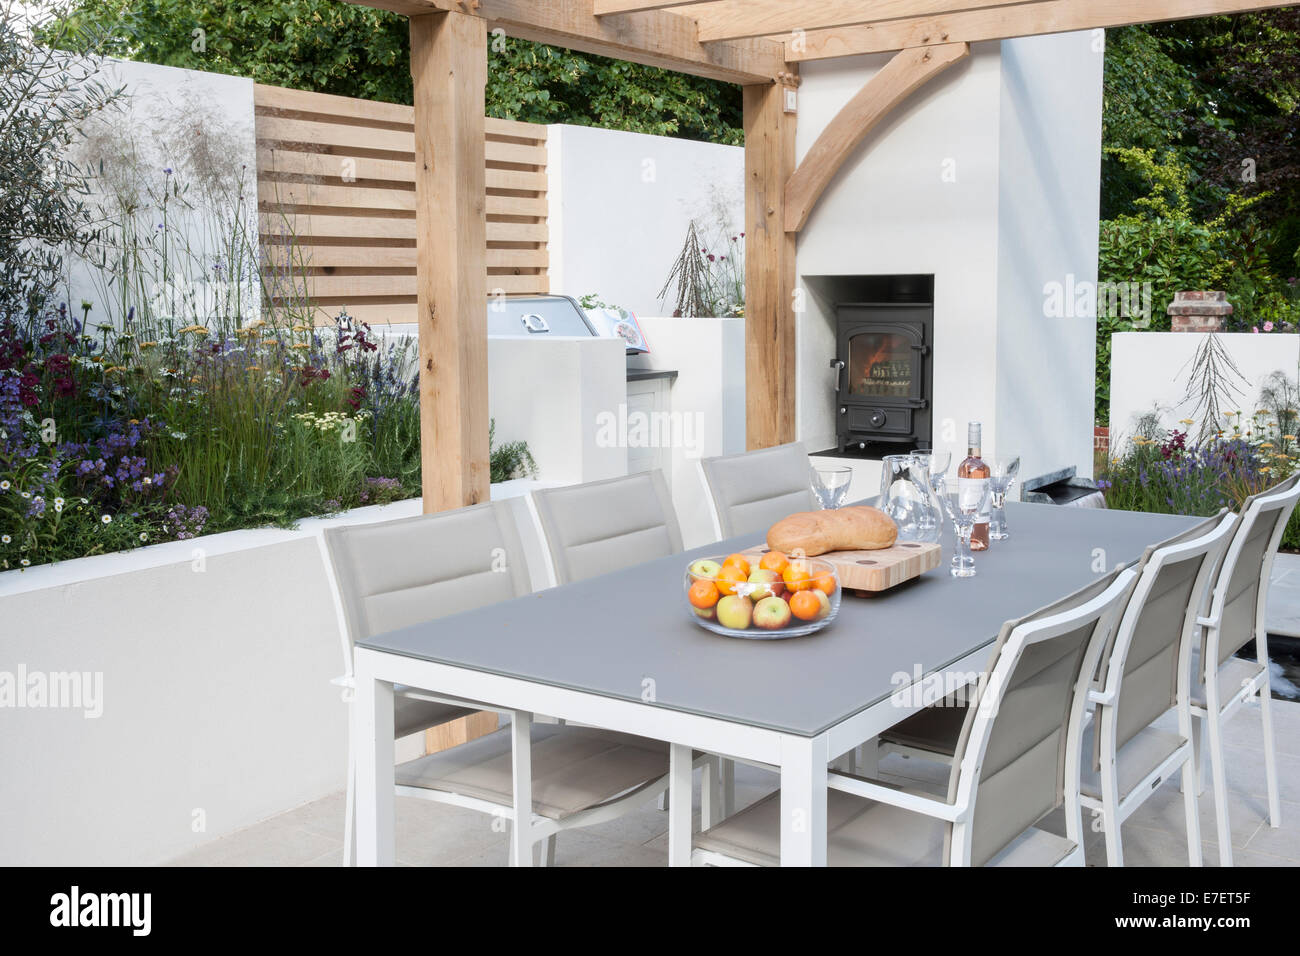 Jardín - vista del jardín contemporáneo al aire libre comedor mobiliario zona de estar patio con mesas y sillas cocina de leña al aire libre Reino Unido Foto de stock